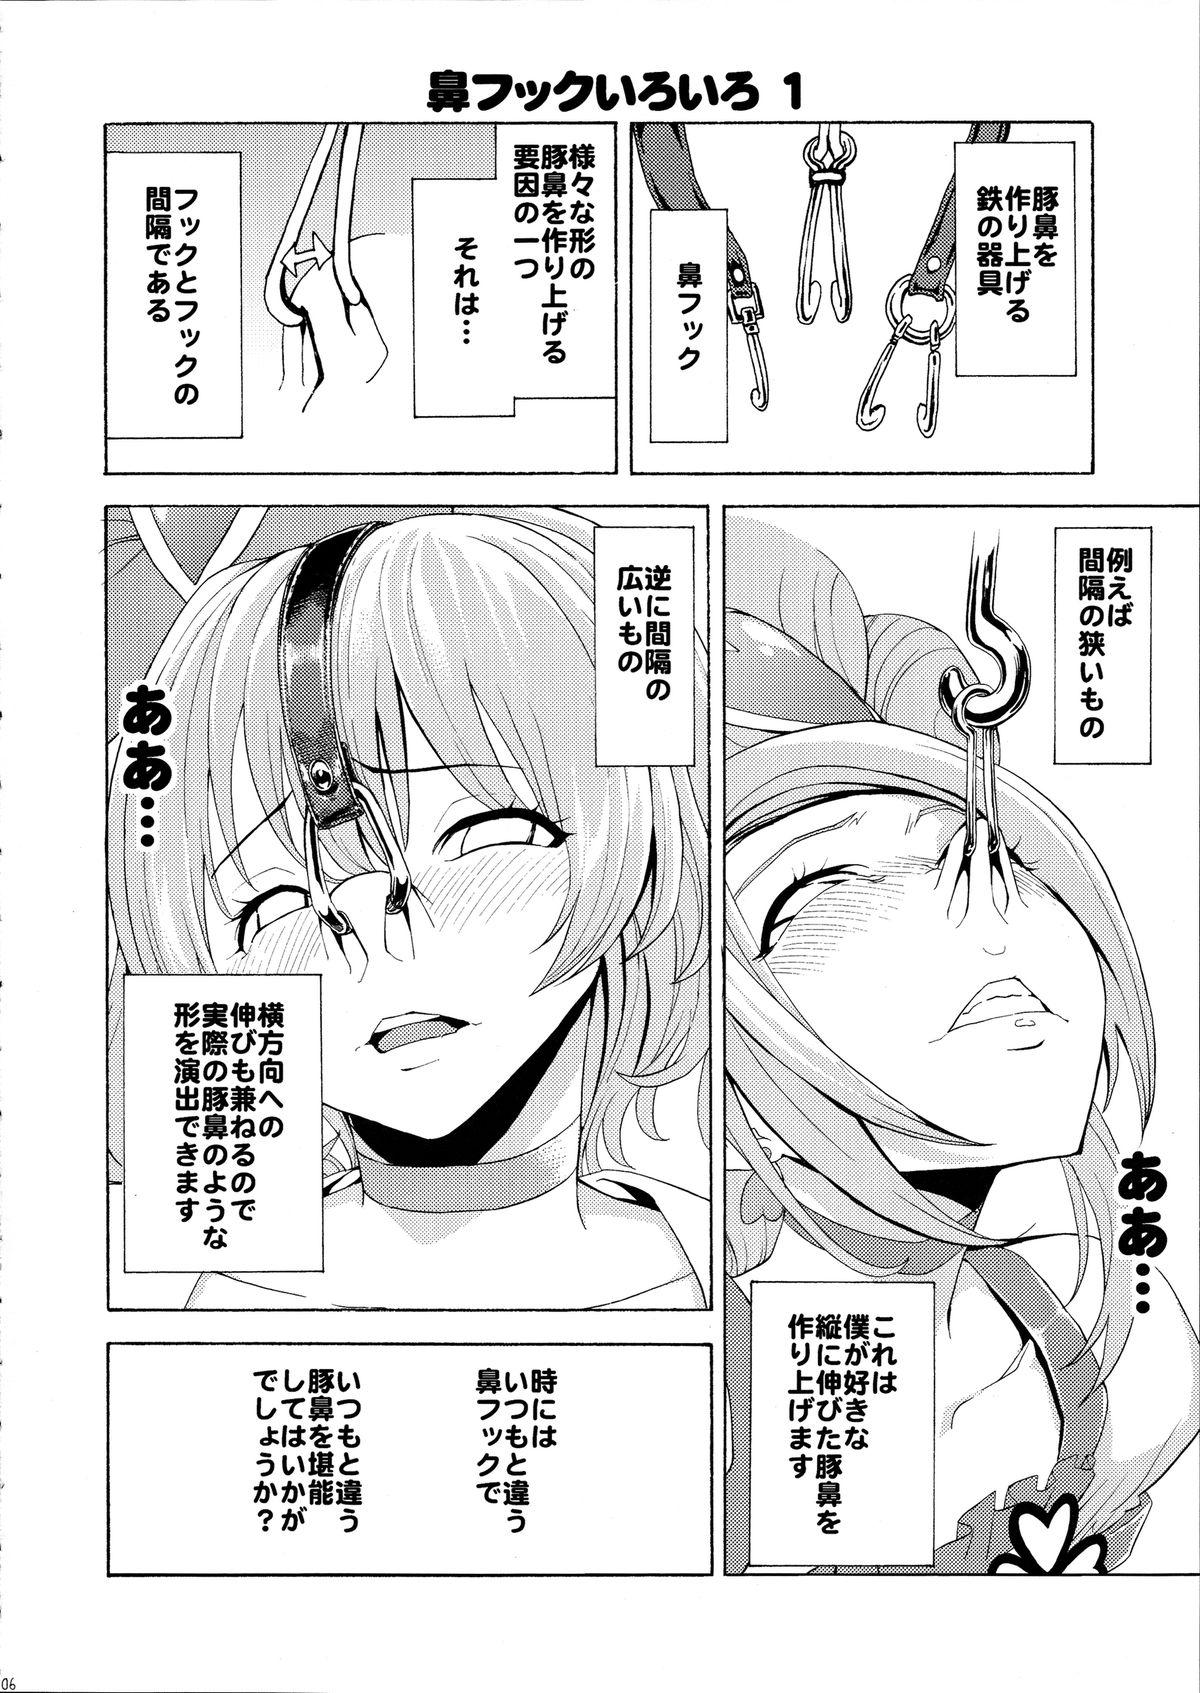 Travesti Hanazeme no hon sono 2 - Vocaloid Love plus Guyonshemale - Page 6